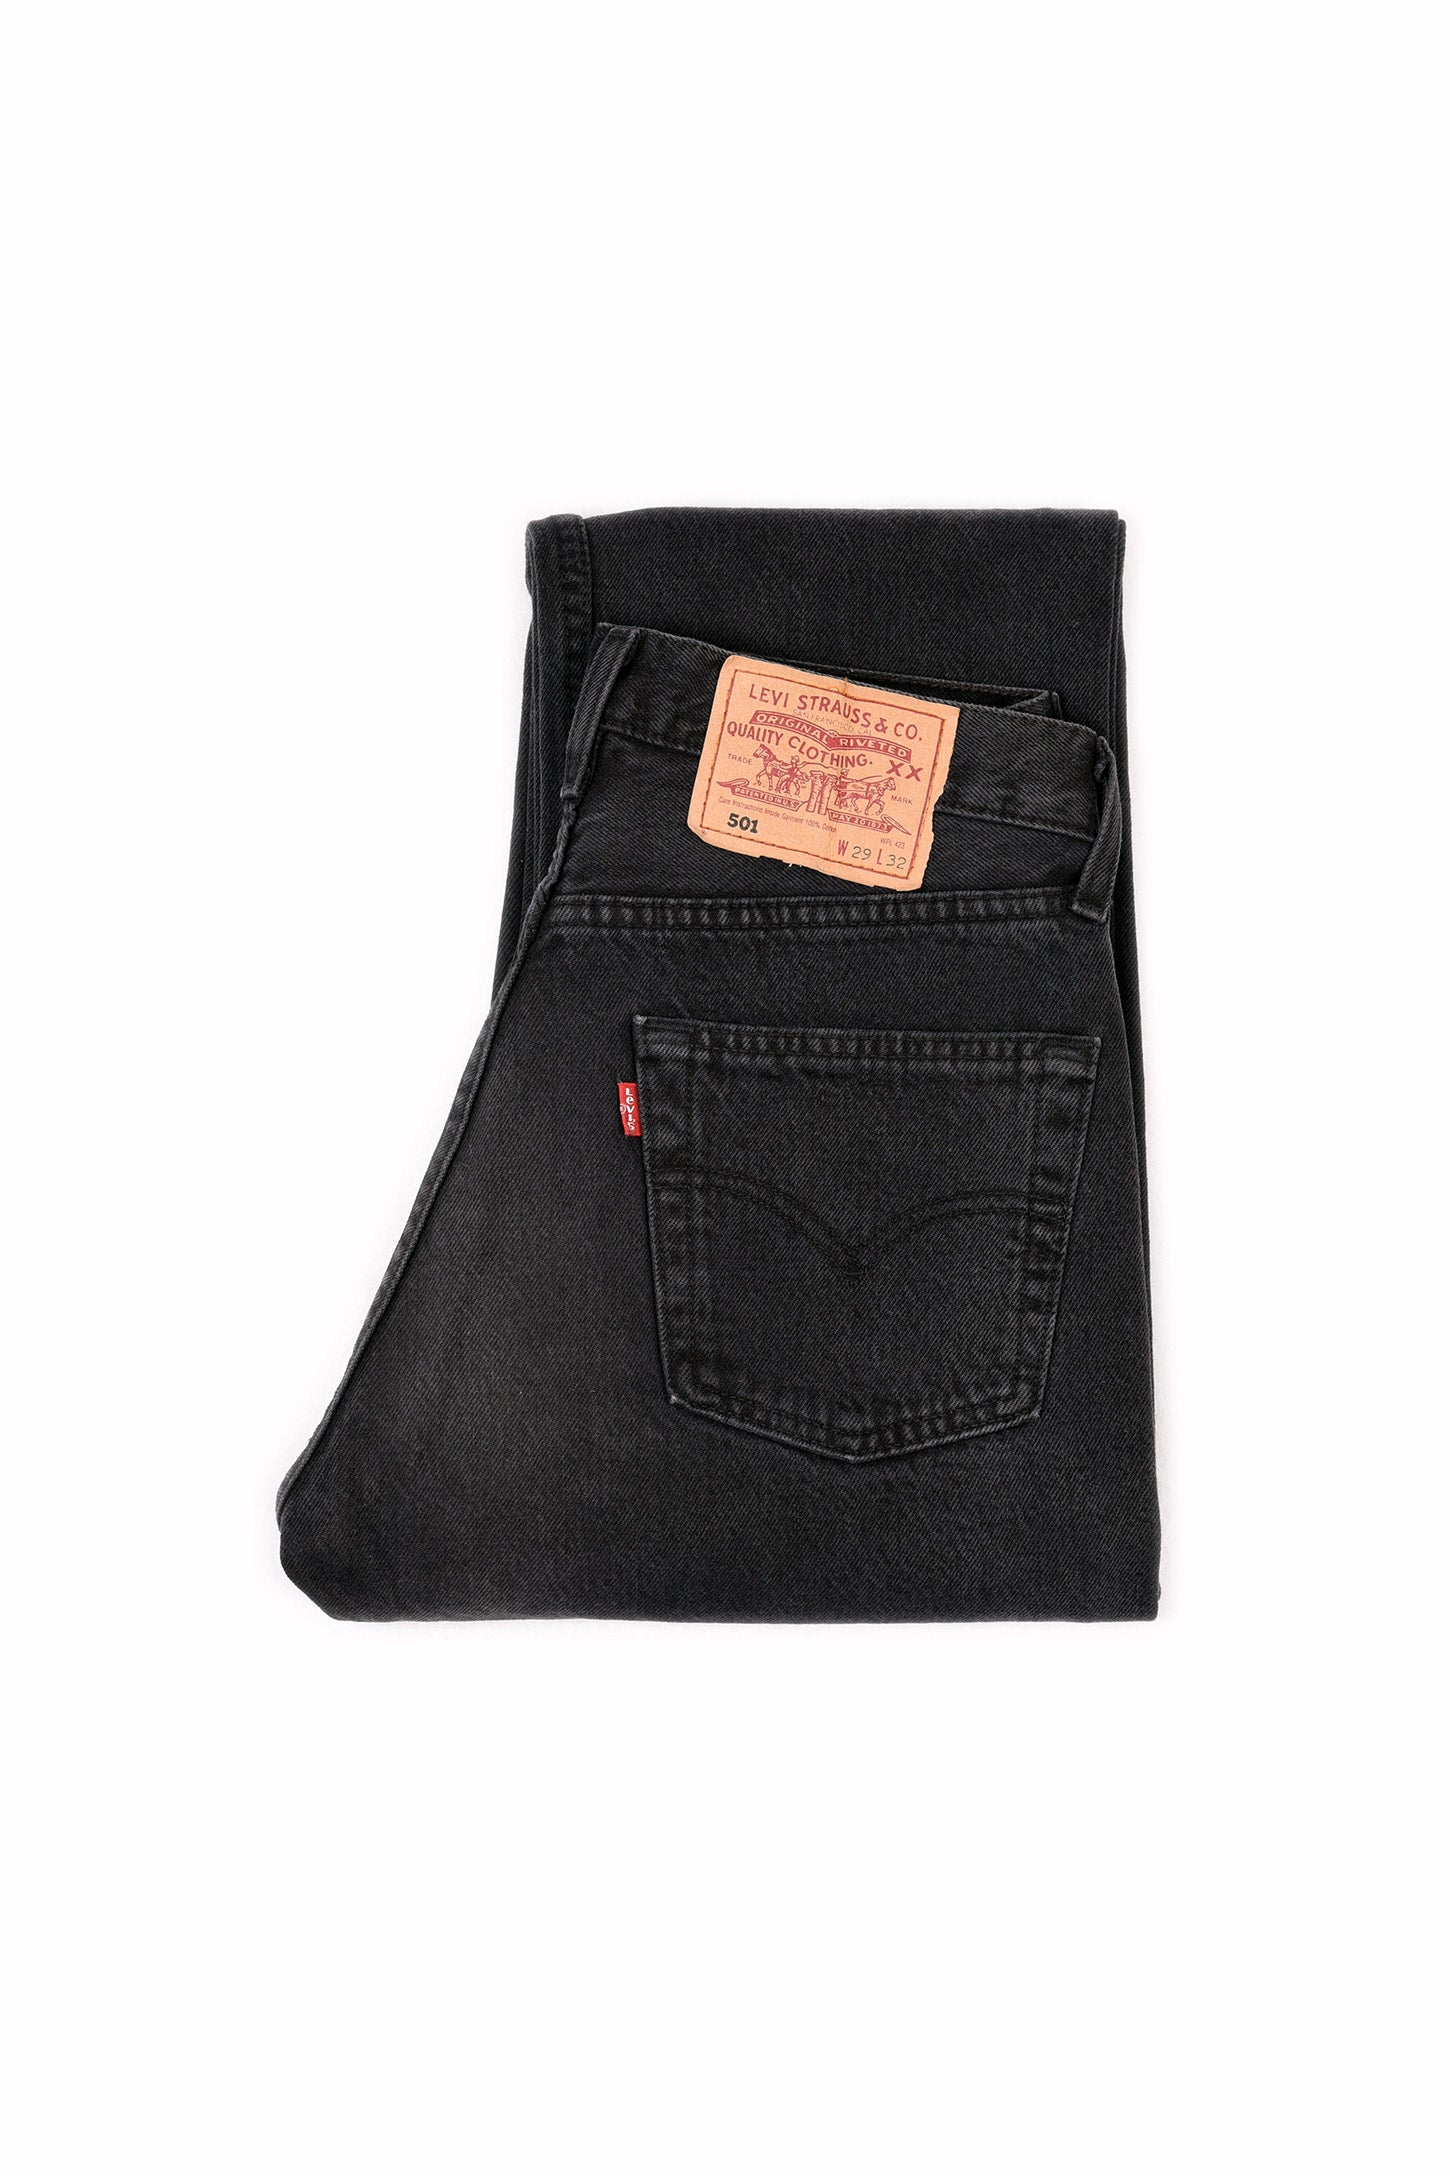 Levis® 501 Mens Denim Jeans Black Original Fit bottoms Straight Leg Pants